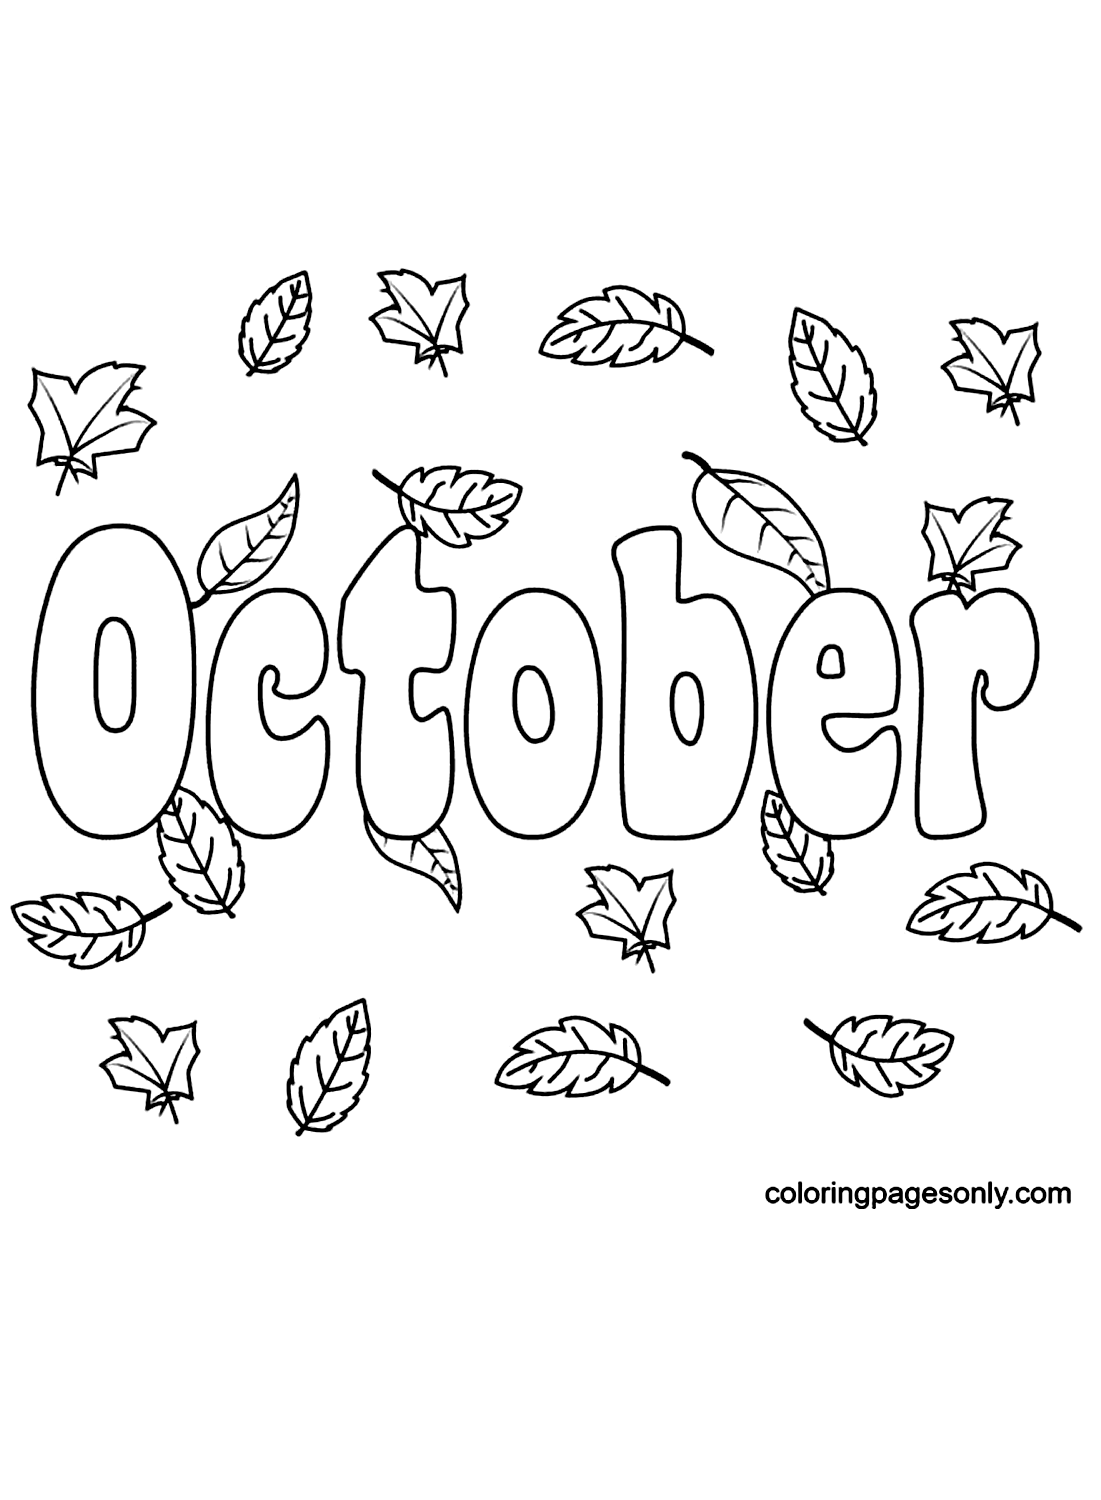 Outubro com folhas de outono de outubro